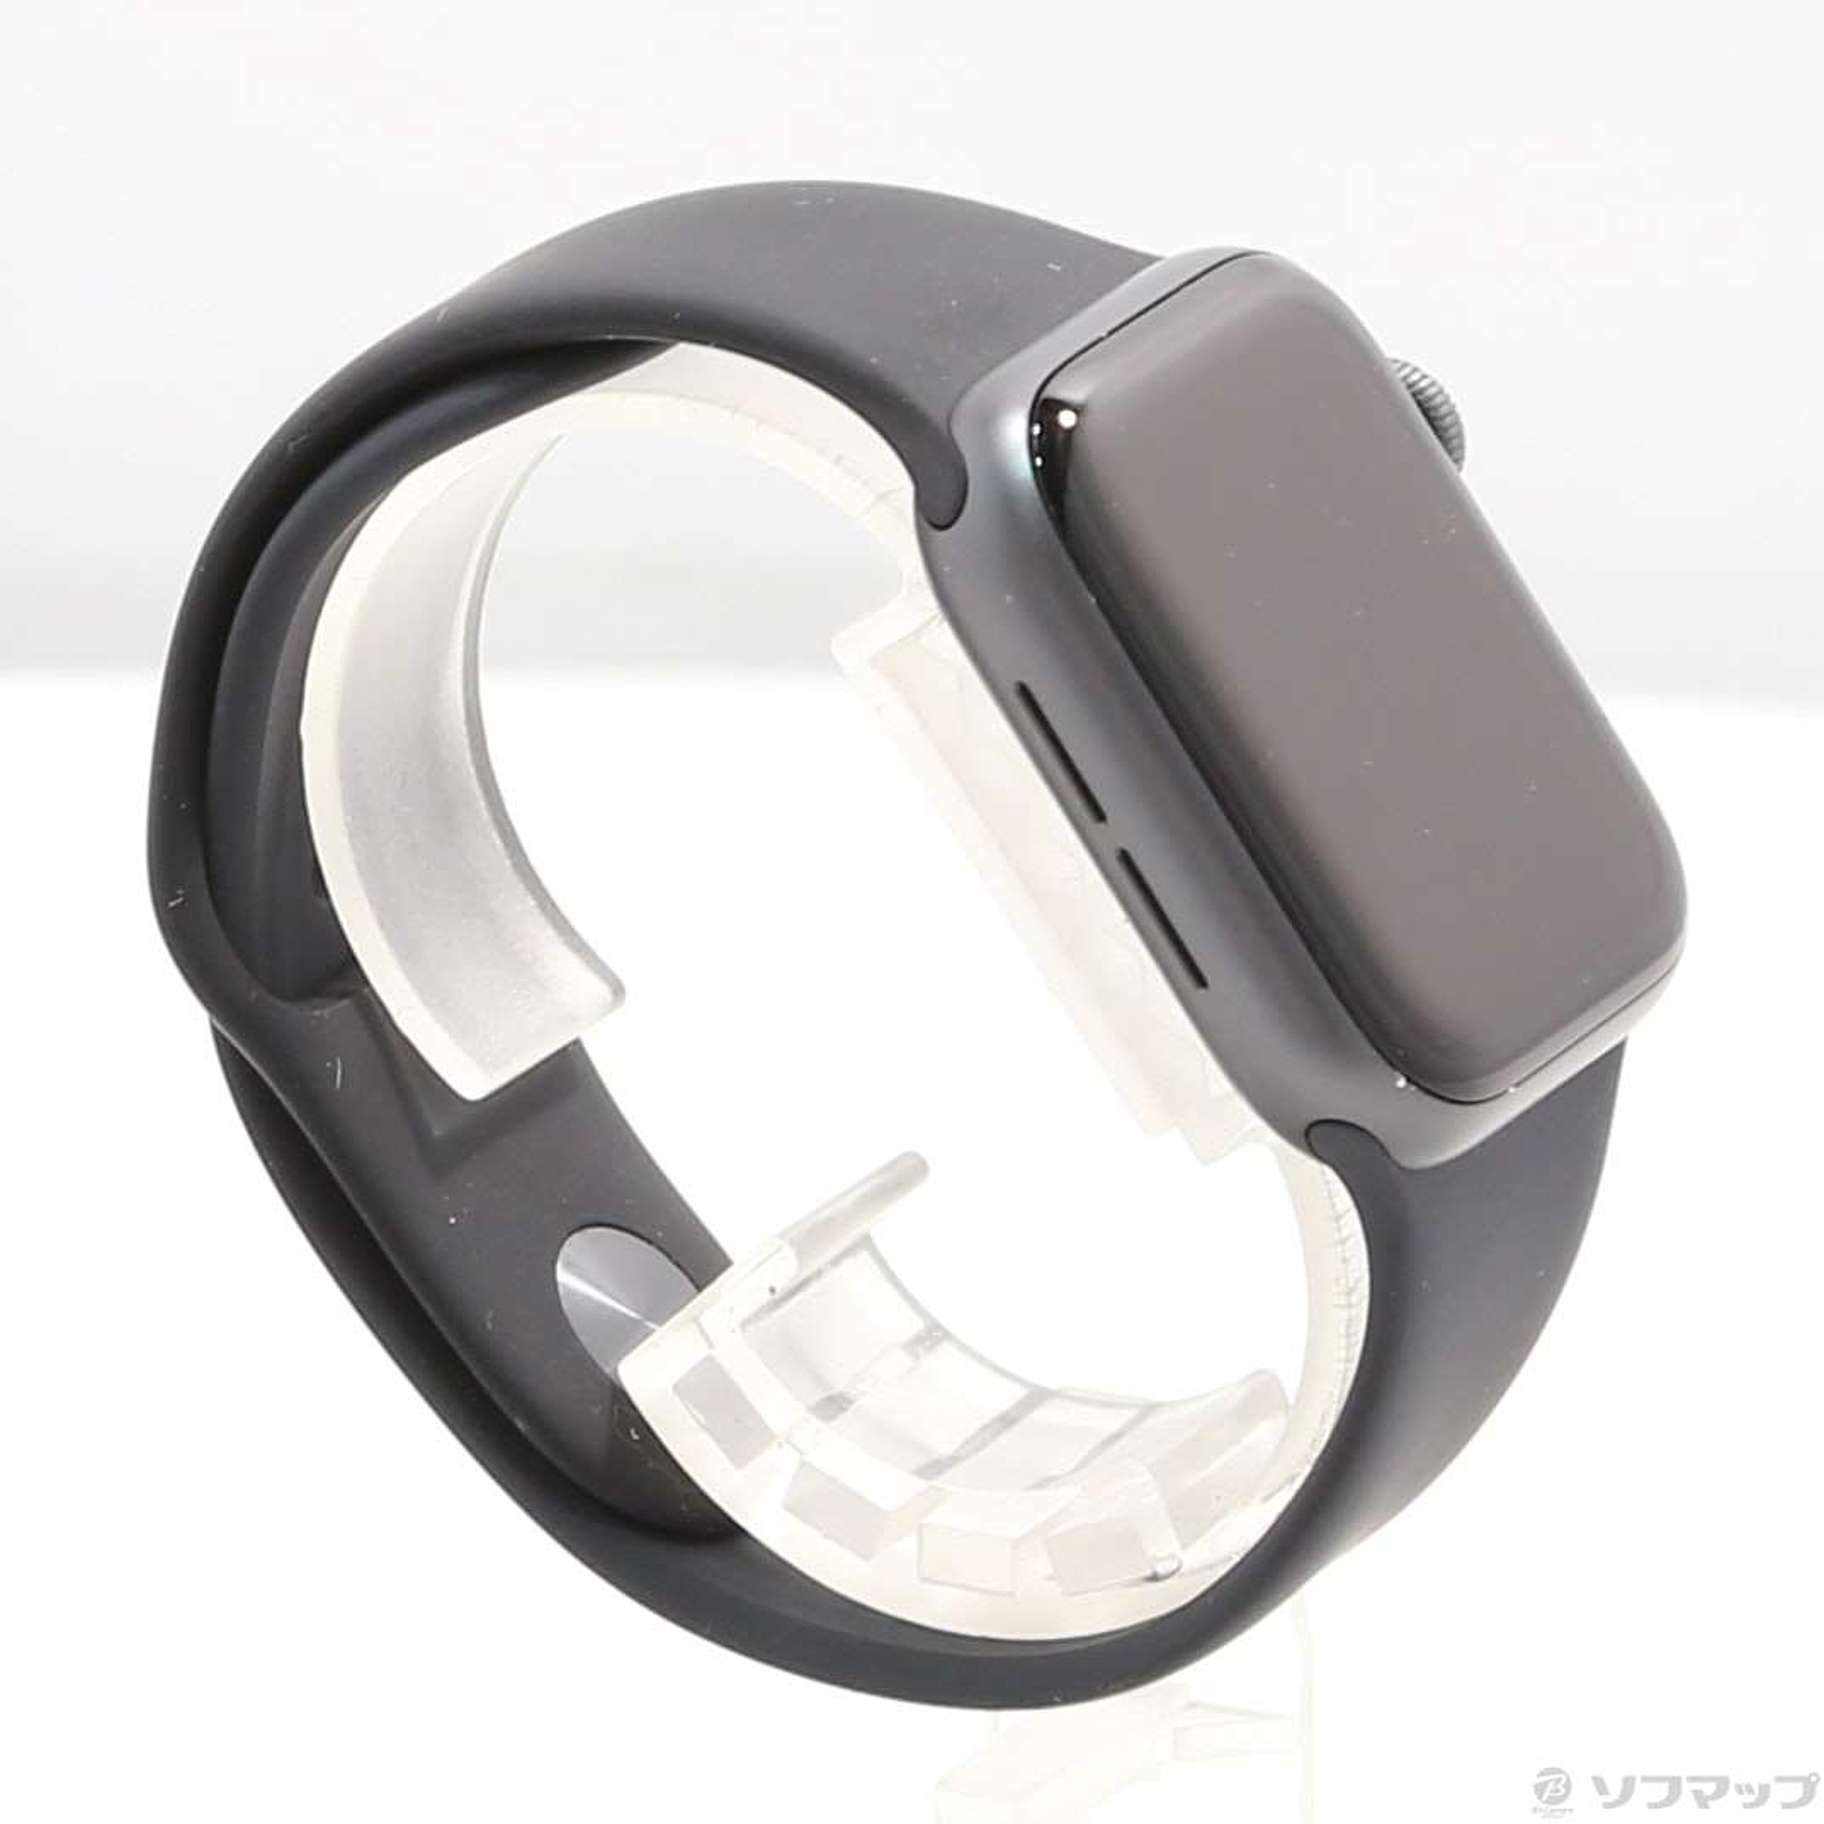 中古品〕 Apple Watch Series 4 GPS 40mm スペースグレイ